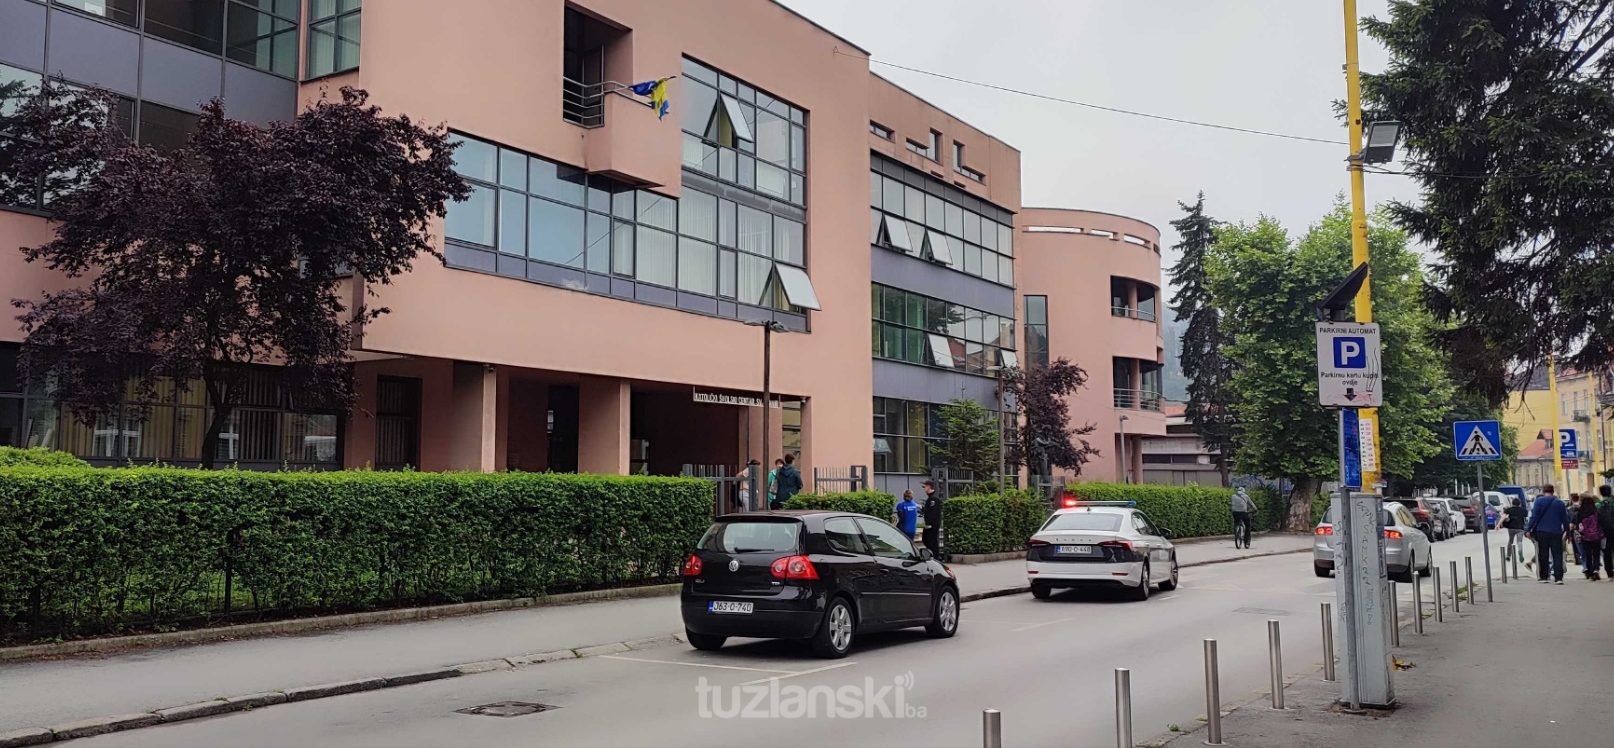 Lažna dojava u KŠC Sveti Franjo u Tuzli: Na Instagram profil direktorice stigla obavijest o postavljenoj bombi